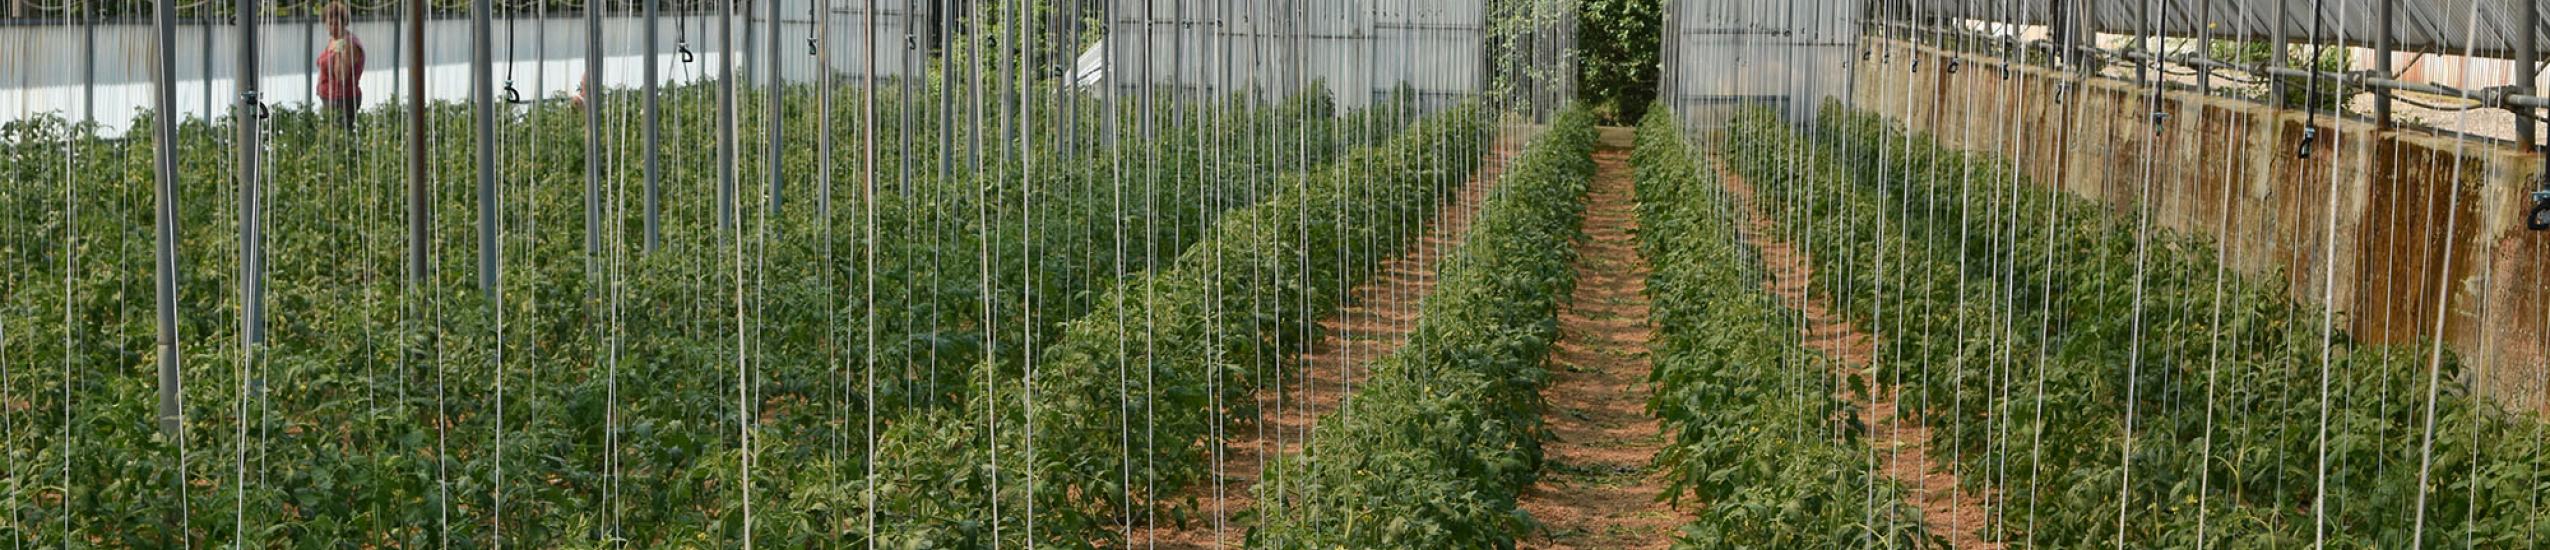 I pomodori coltivati in serra